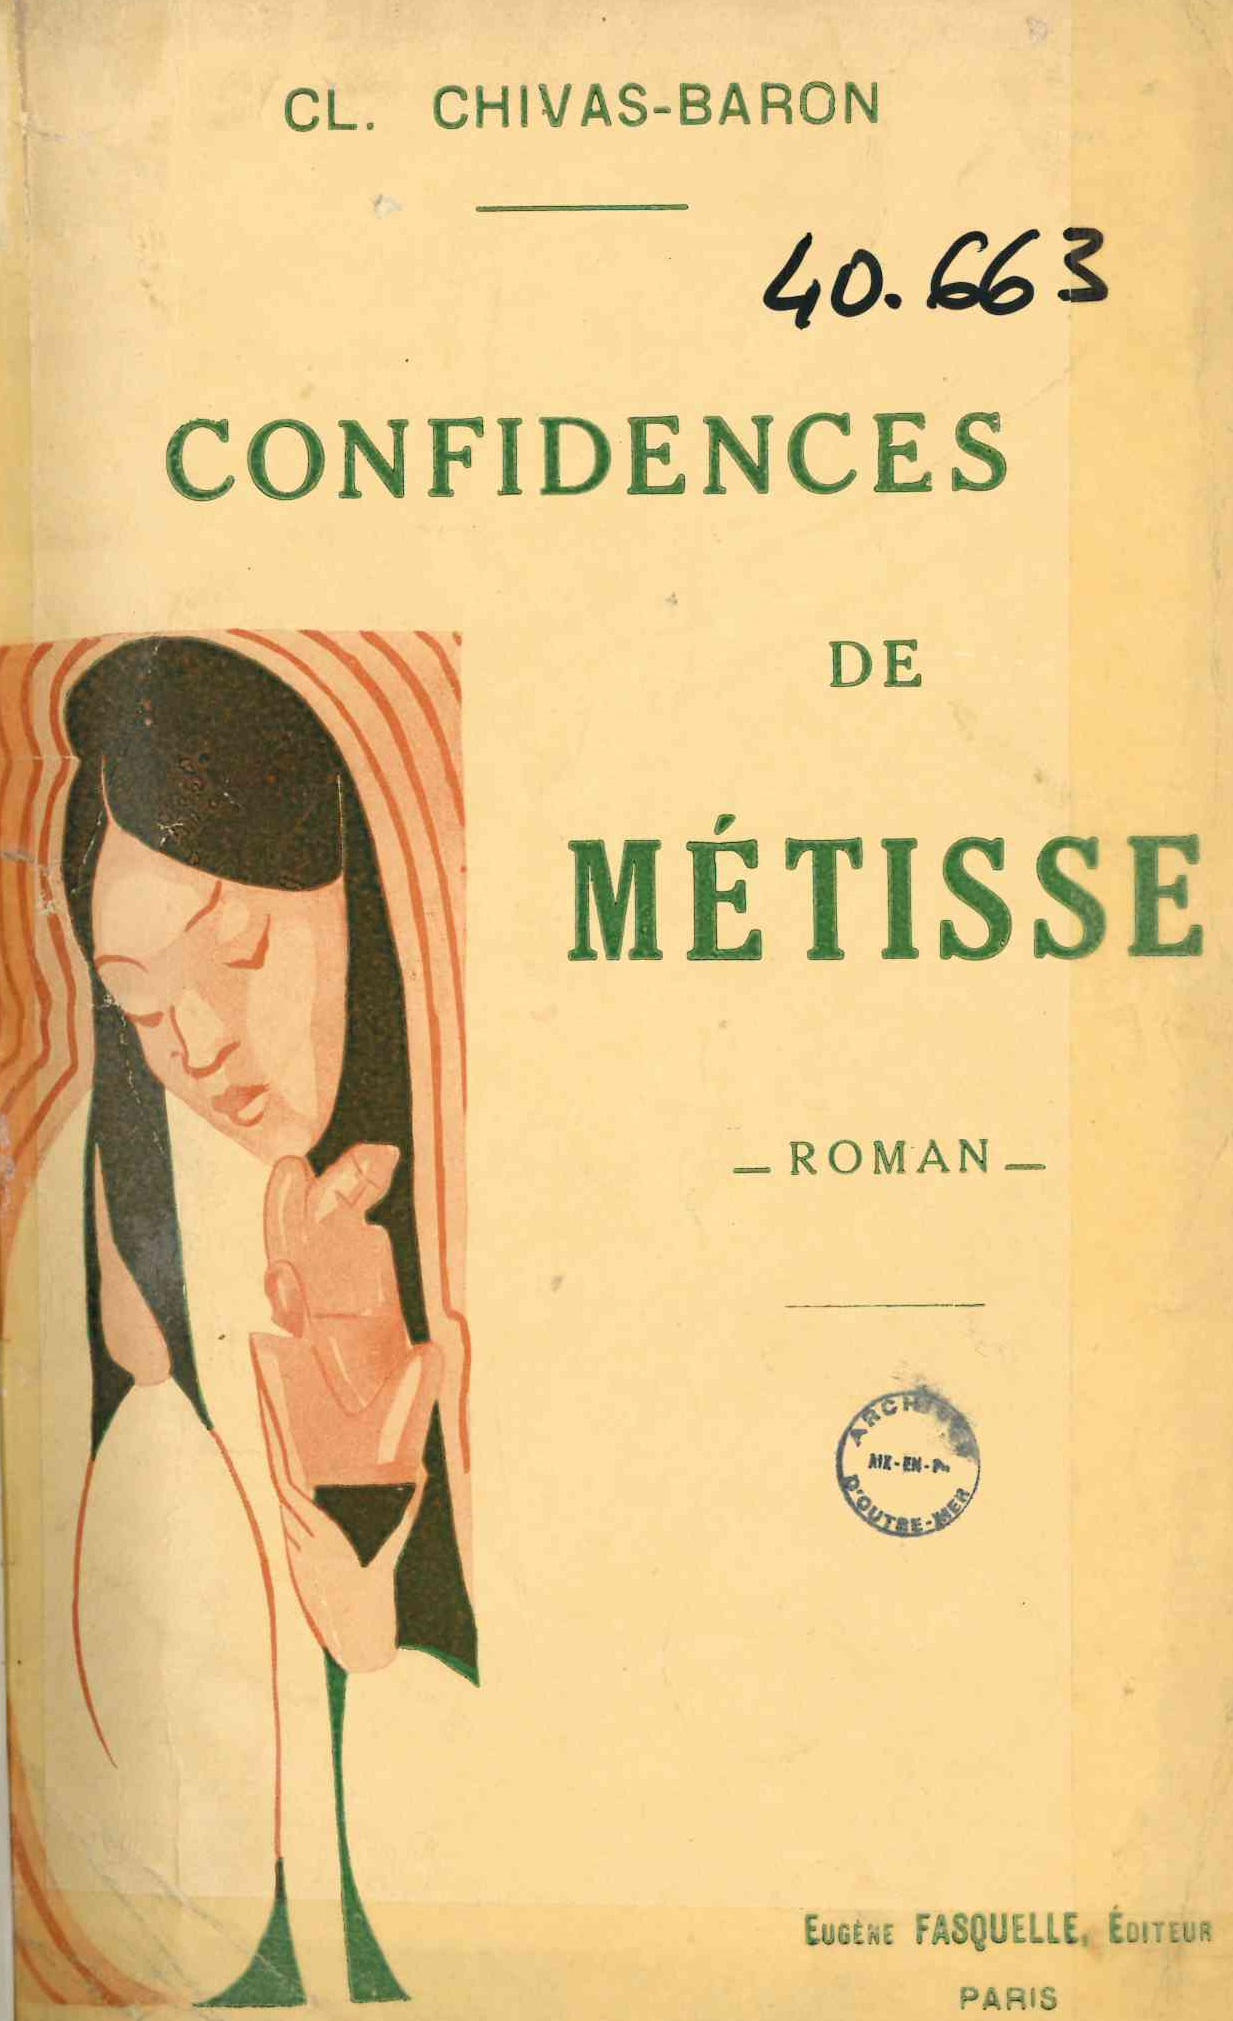 Chivas-Baron (Clotilde), Confidences de métisse, Paris, Charpentier et Fasquelle, 1927